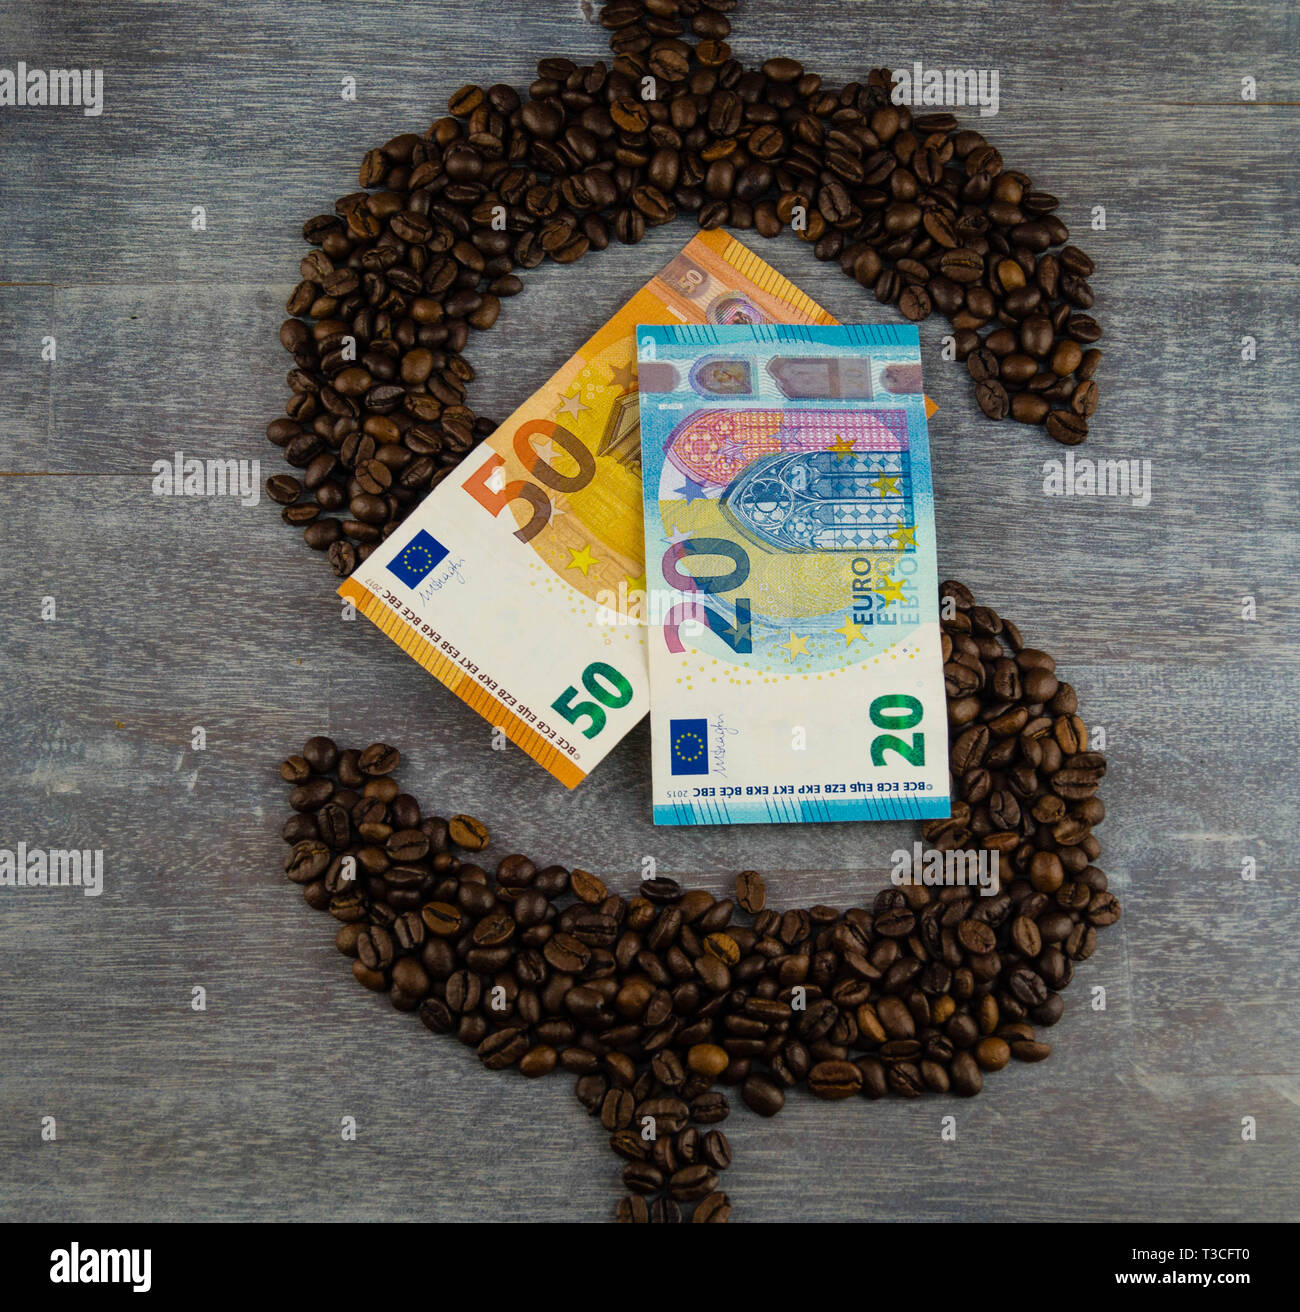 Commercio equo prezzo del caffè - caffè torrefatto in grani e denaro Foto Stock